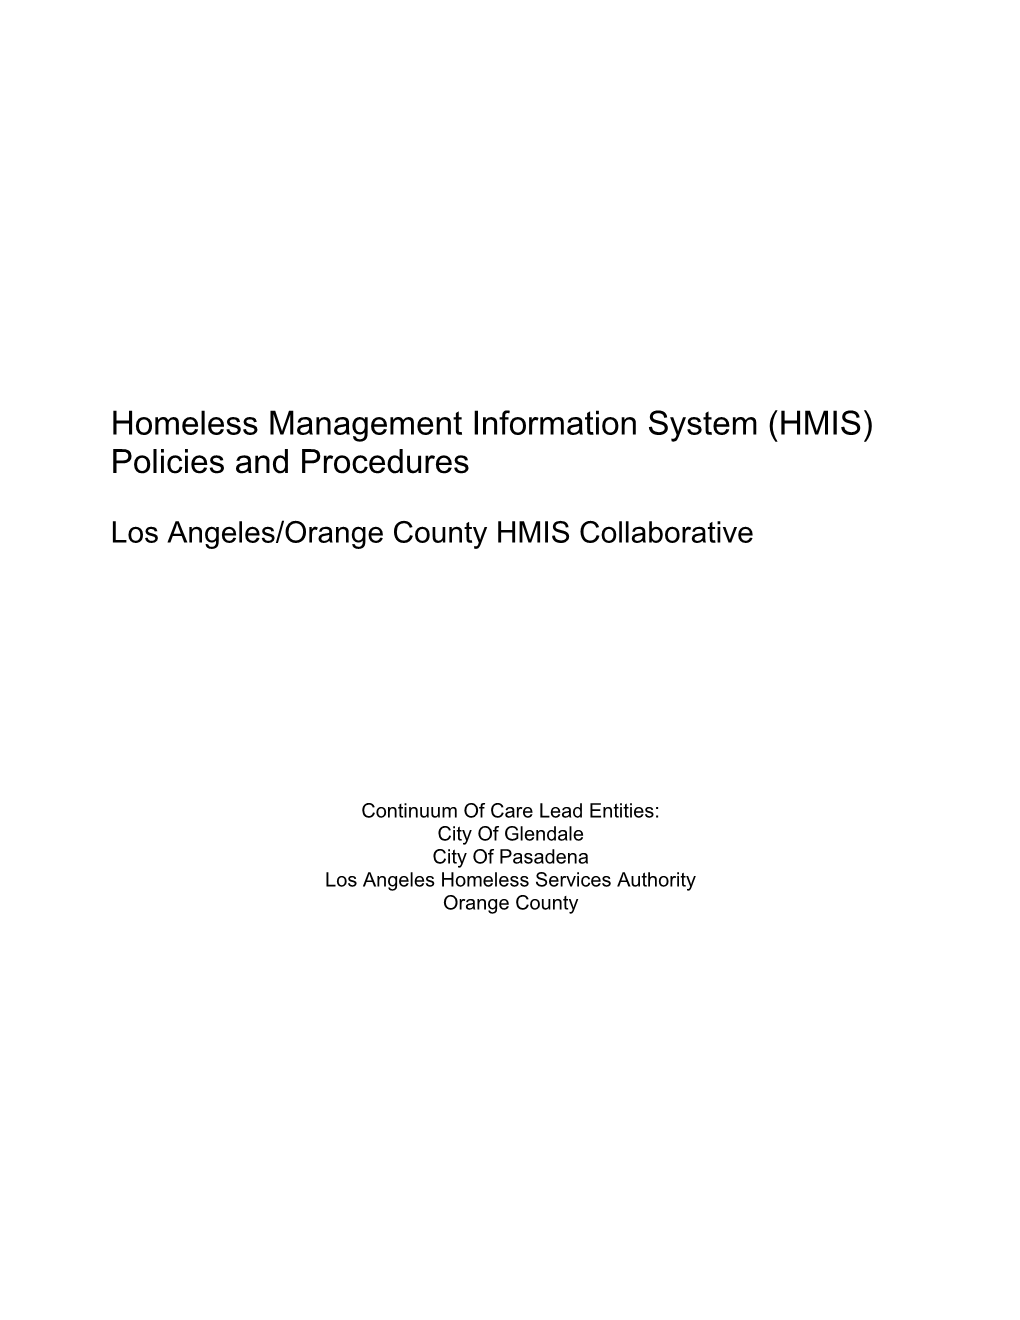 Hmis Lead Agencies Contact Information